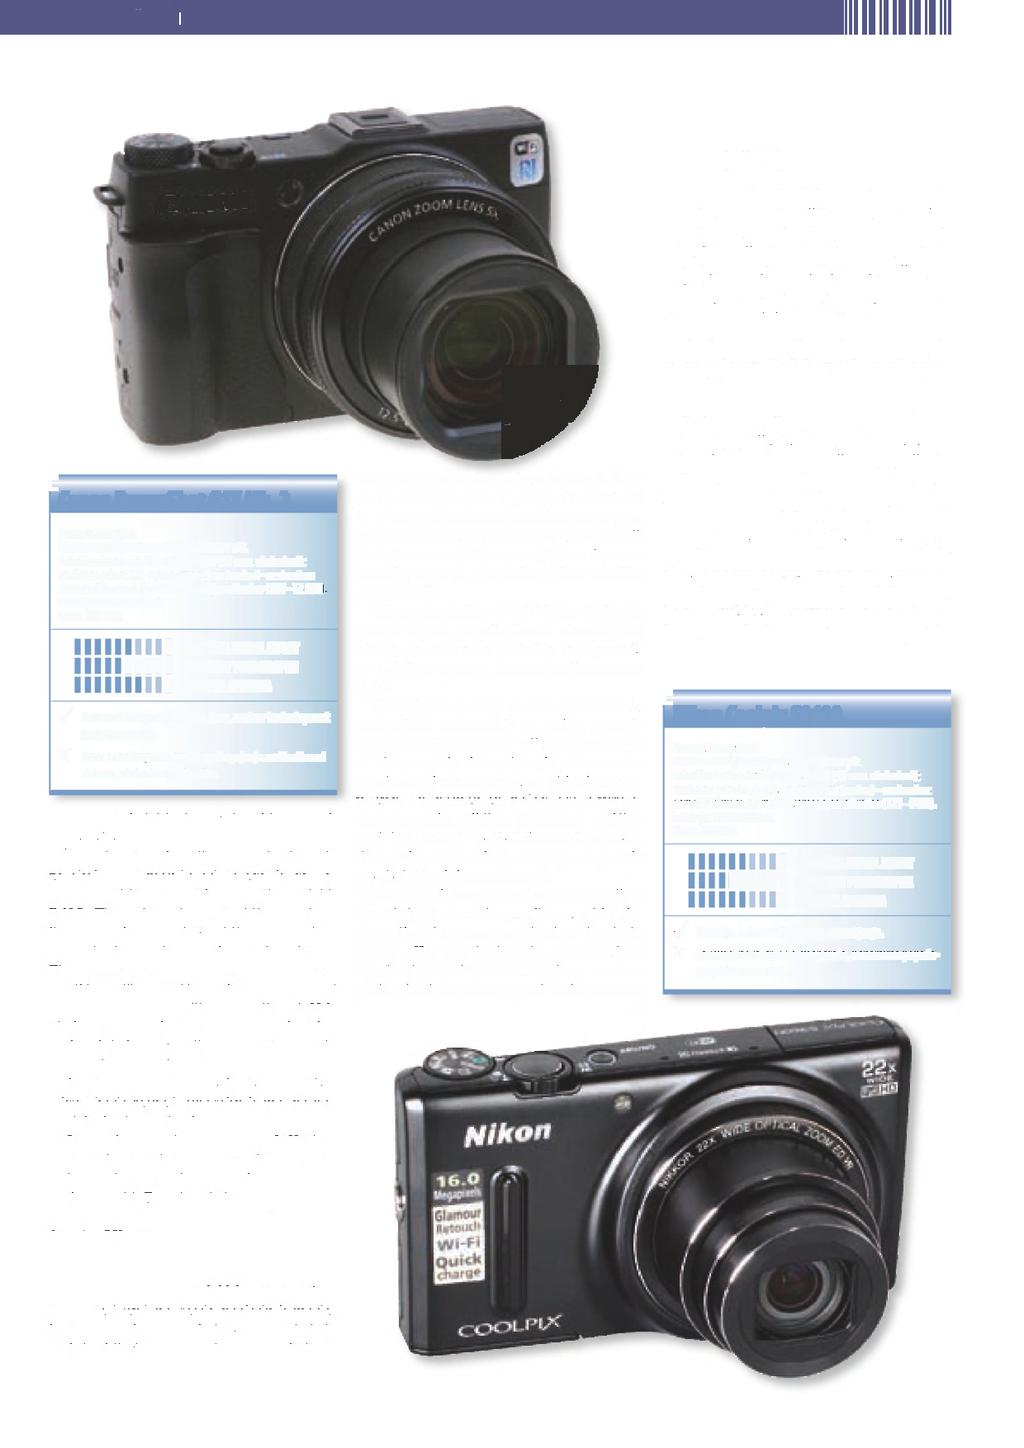 NAJBOLJŠI DIGITALNI FOTOAPARATI faíioí 1 r Canon PowerShot G1X Mk. 2 Razred: Zmogljivi. Efektivna ločljivost tipala: 13 milijonov pik. Tehnične lastnosti: Objektiv 24-120 (35 mm.